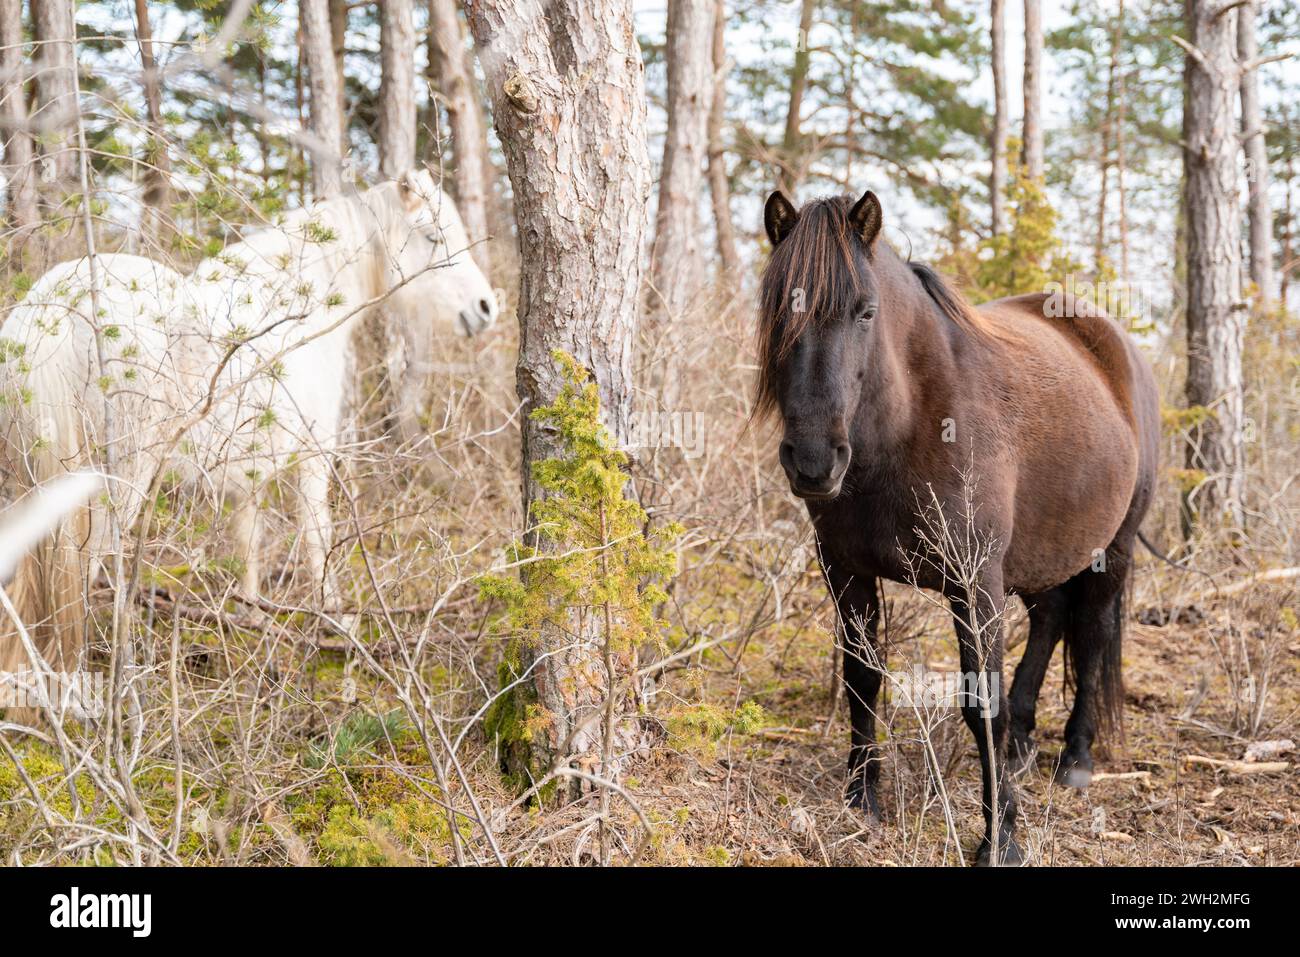 Cavalli autoctoni estoni (Estone Klepper) in piedi nell'area della riserva naturale. Cavalli in piedi tra gli alberi. Messa a fuoco selettiva. Foto Stock